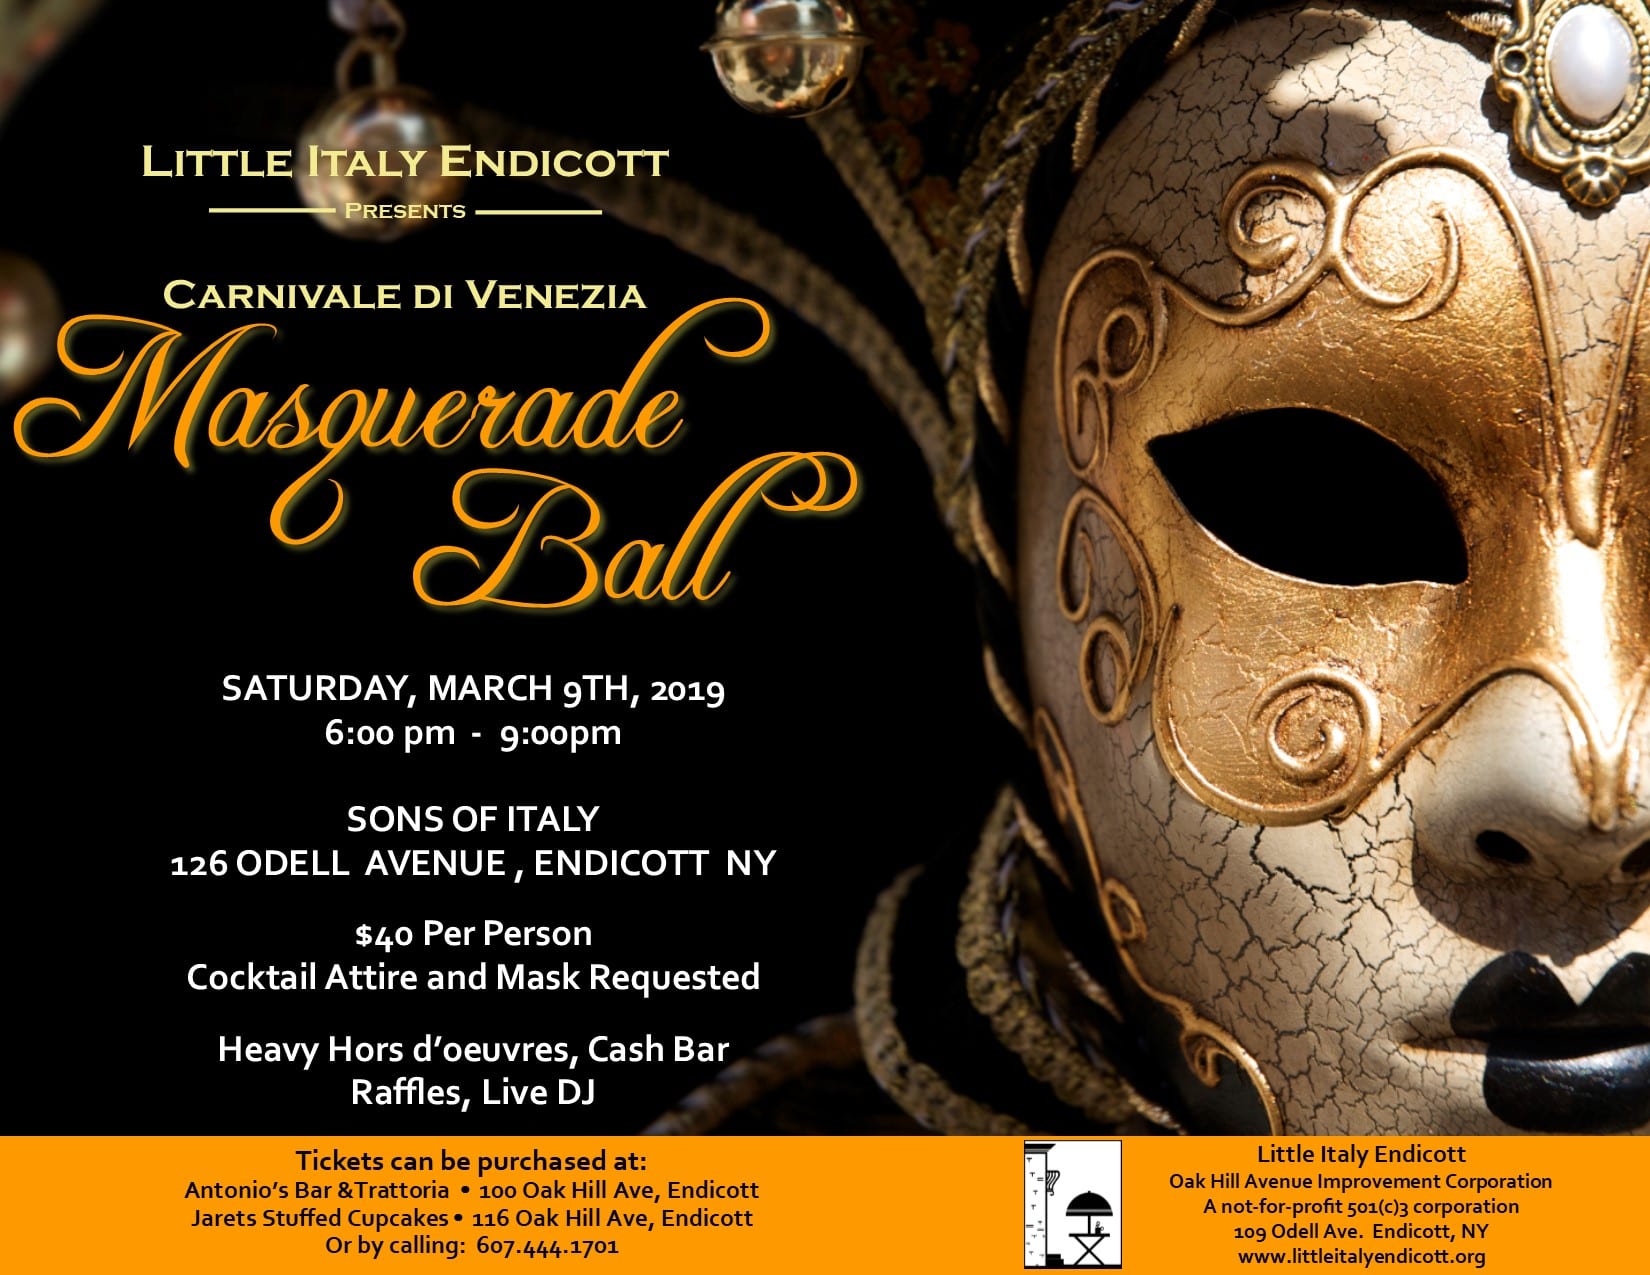 In the Community: Carnivale di Venezia Masquerade Ball on March 9